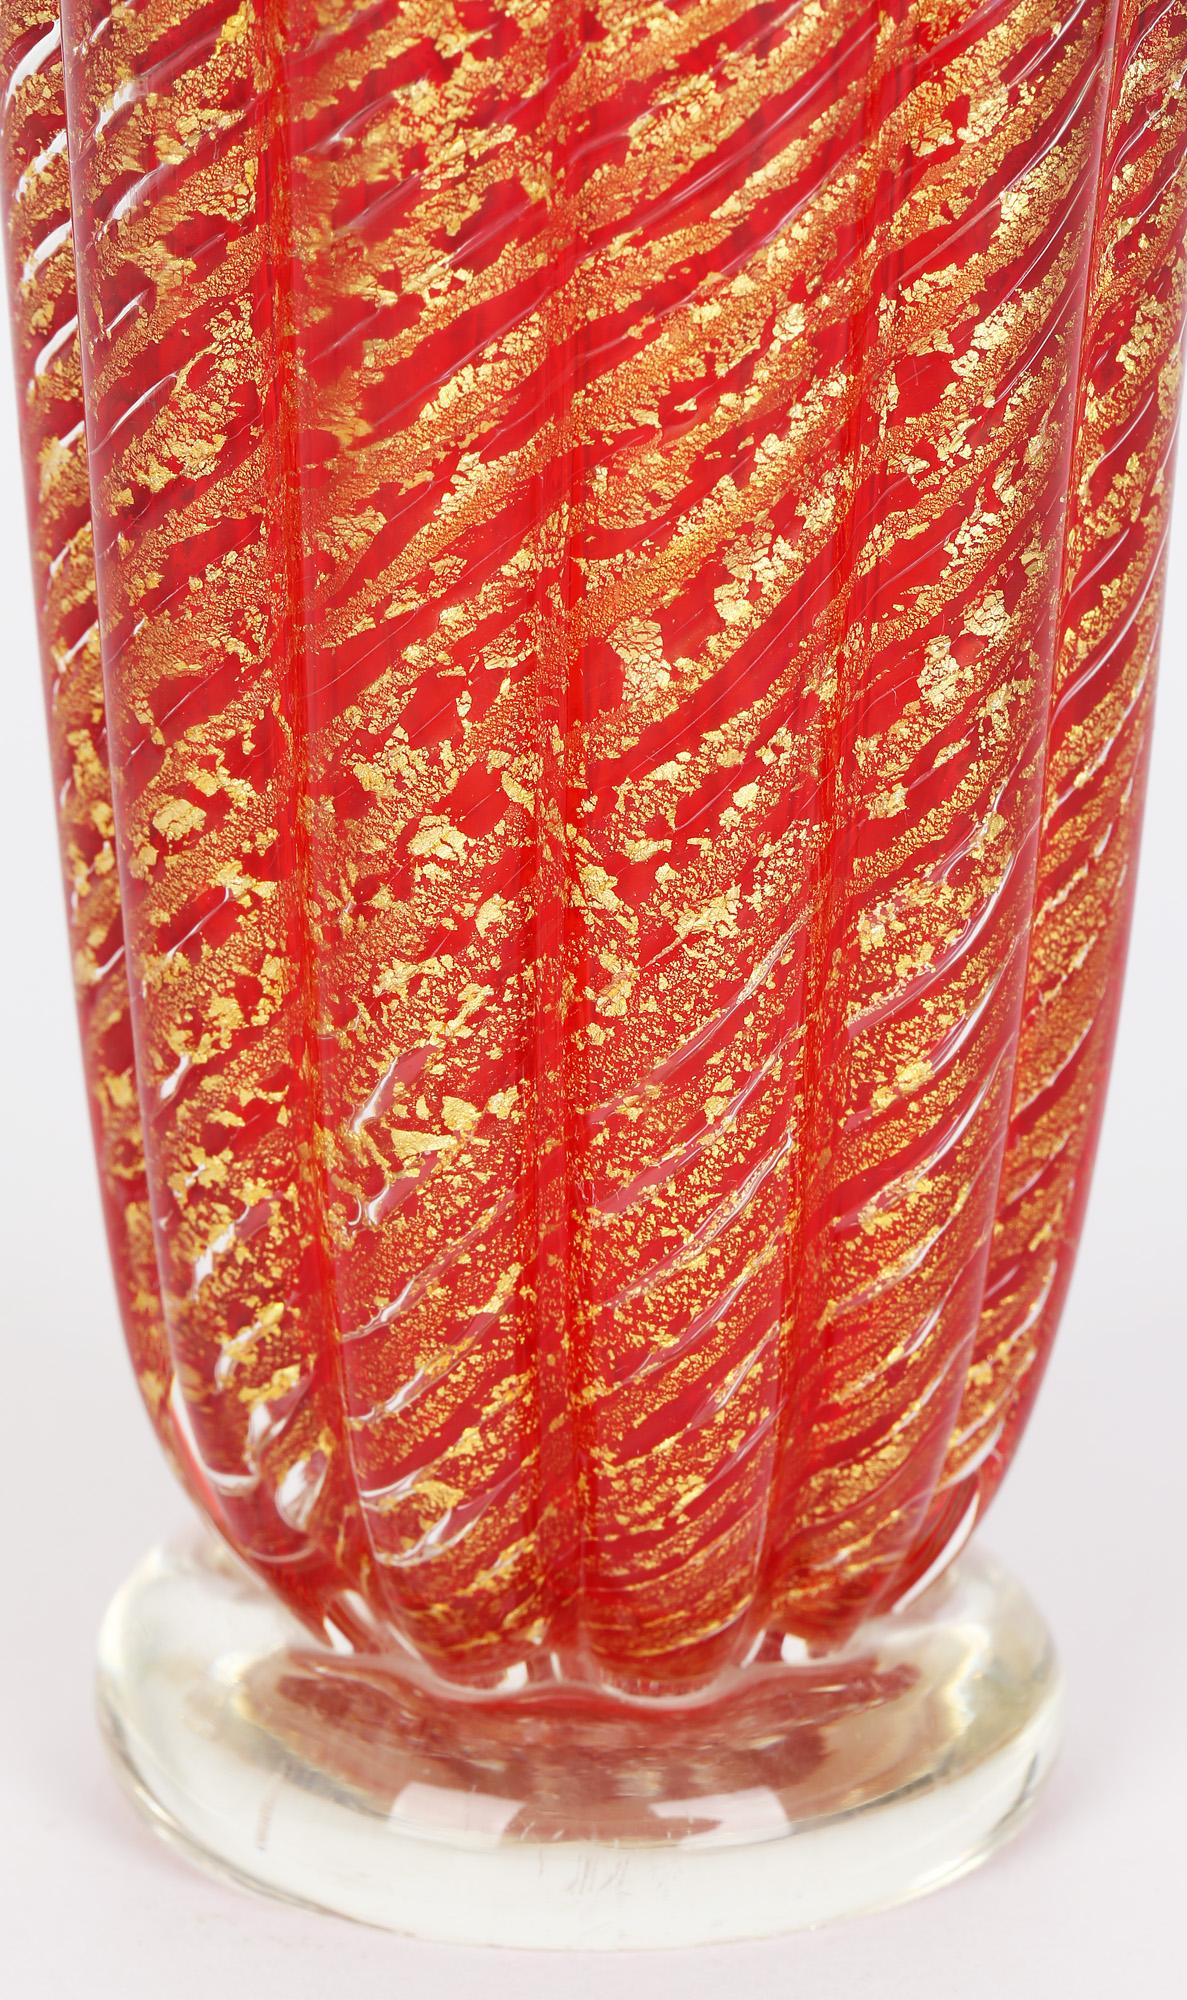 Superbe vase Cordonata D'oro en verre d'art rouge de Murano, datant du milieu du siècle dernier, avec un sommet en forme de tricorne. Le vase est très robuste et repose sur un pied arrondi en verre transparent. Le corps est orné d'un motif nervuré